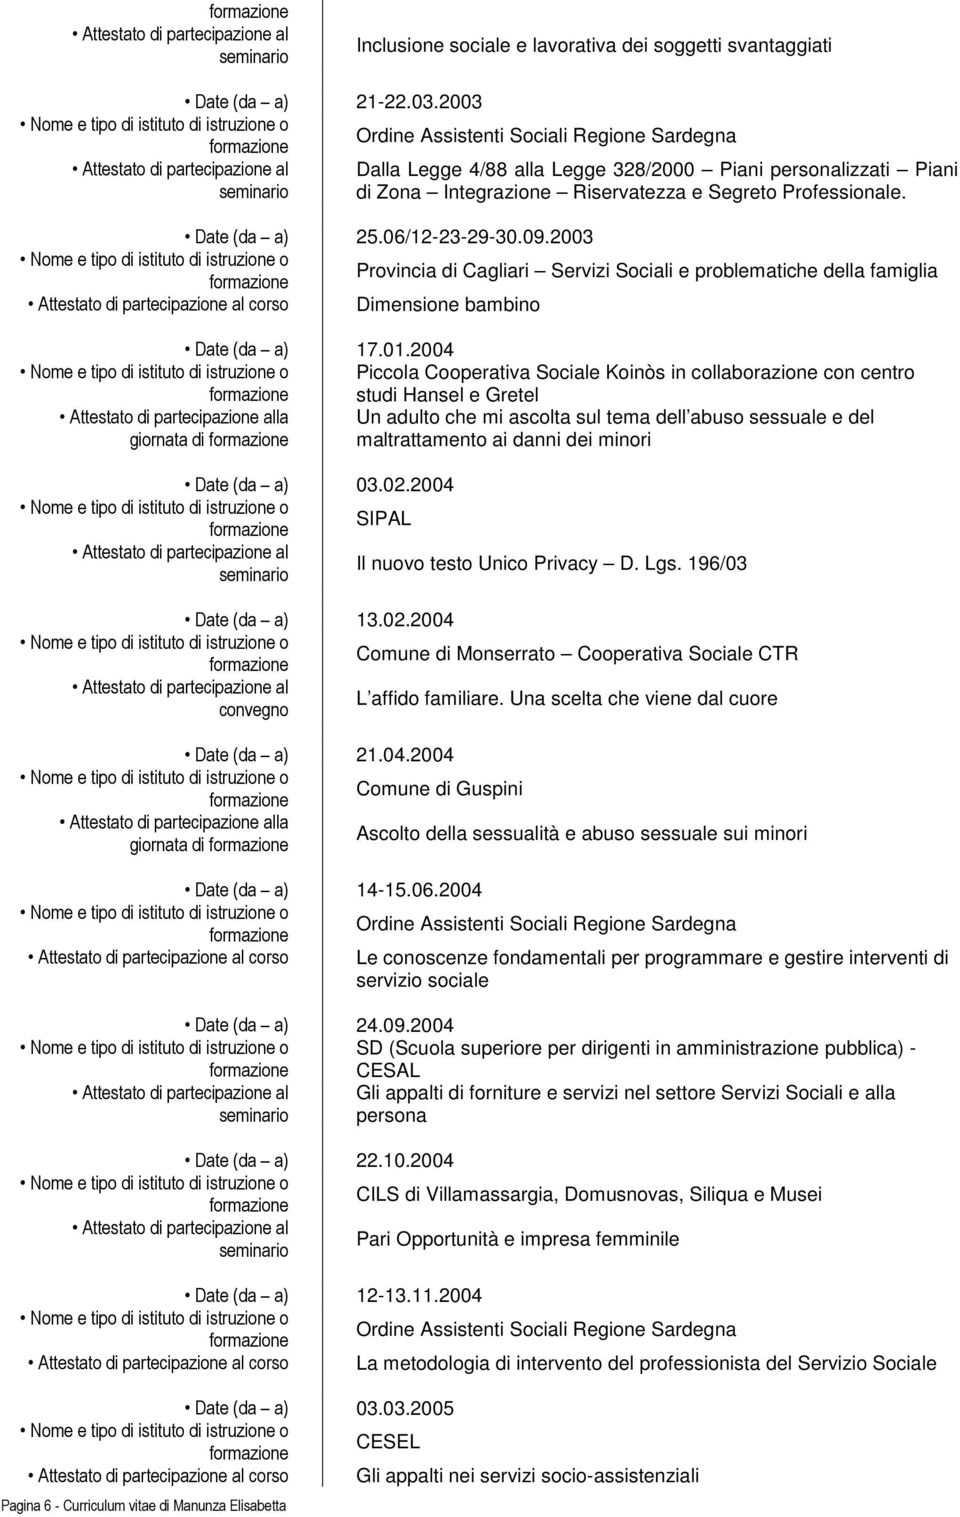 06/12-23-29-30.09.2003 Provincia di Cagliari Servizi Sociali e problematiche della famiglia corso Dimensione bambino Date (da a) 17.01.